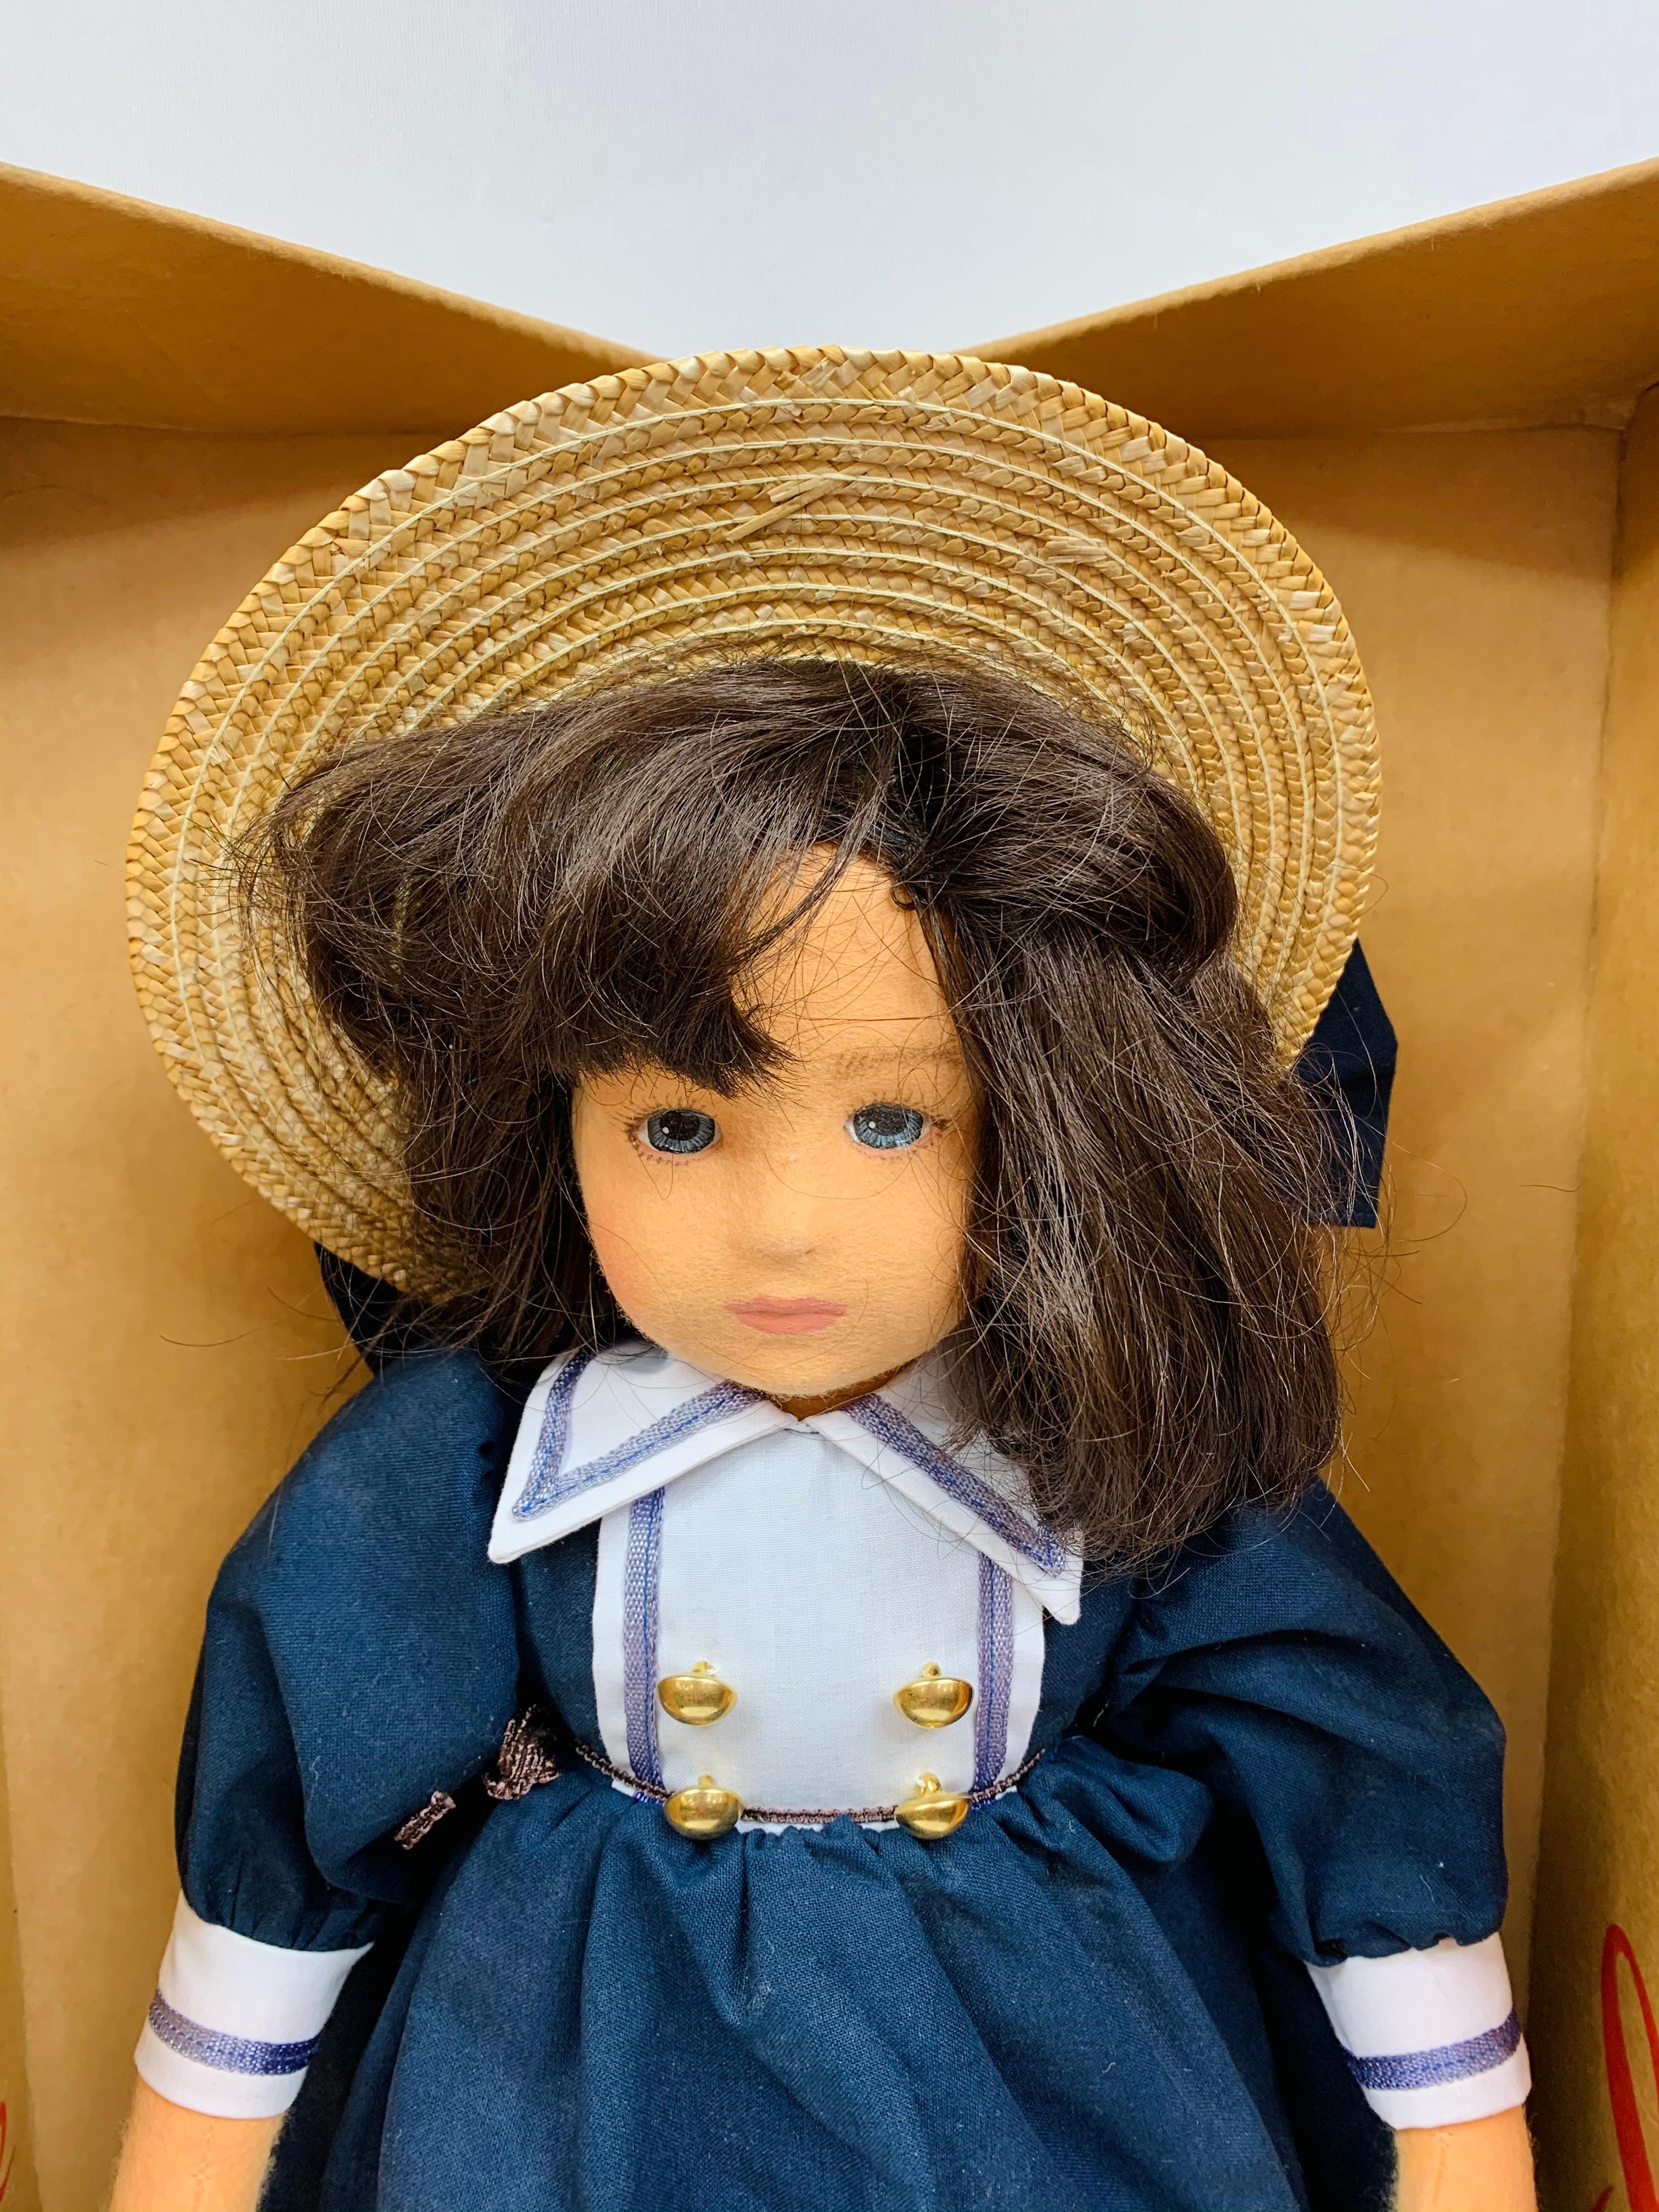 La poupée Lenci est l'une des plus belles poupées jamais réalisées. Cette magnifique et rare poupée Lenci originale des années 1980. La poupée a été achetée au salon du jouet de Nuremberg en 1996 et possède encore les étiquettes d'origine ainsi